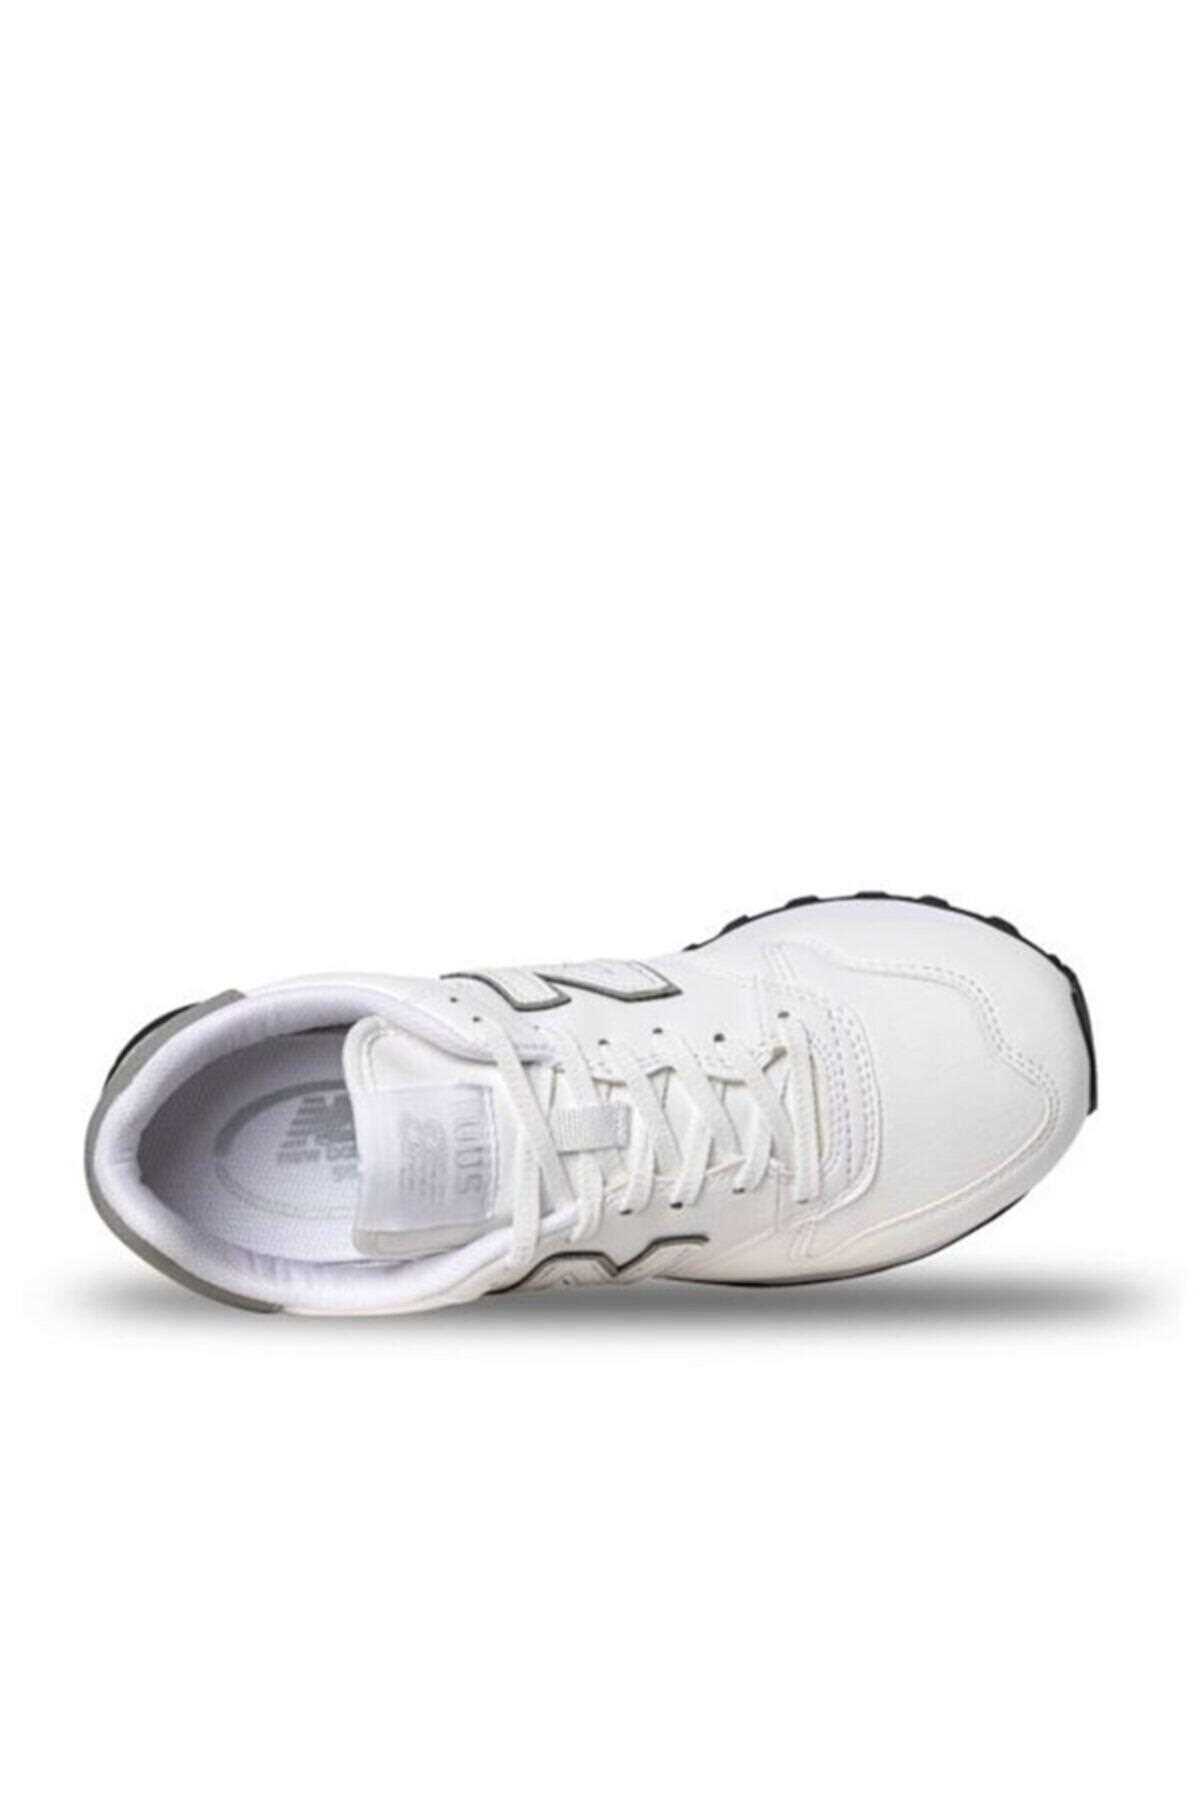 فروش انلاین کفش مخصوص پیاده روی زنانه برند New Balance رنگ سفید ty69457385